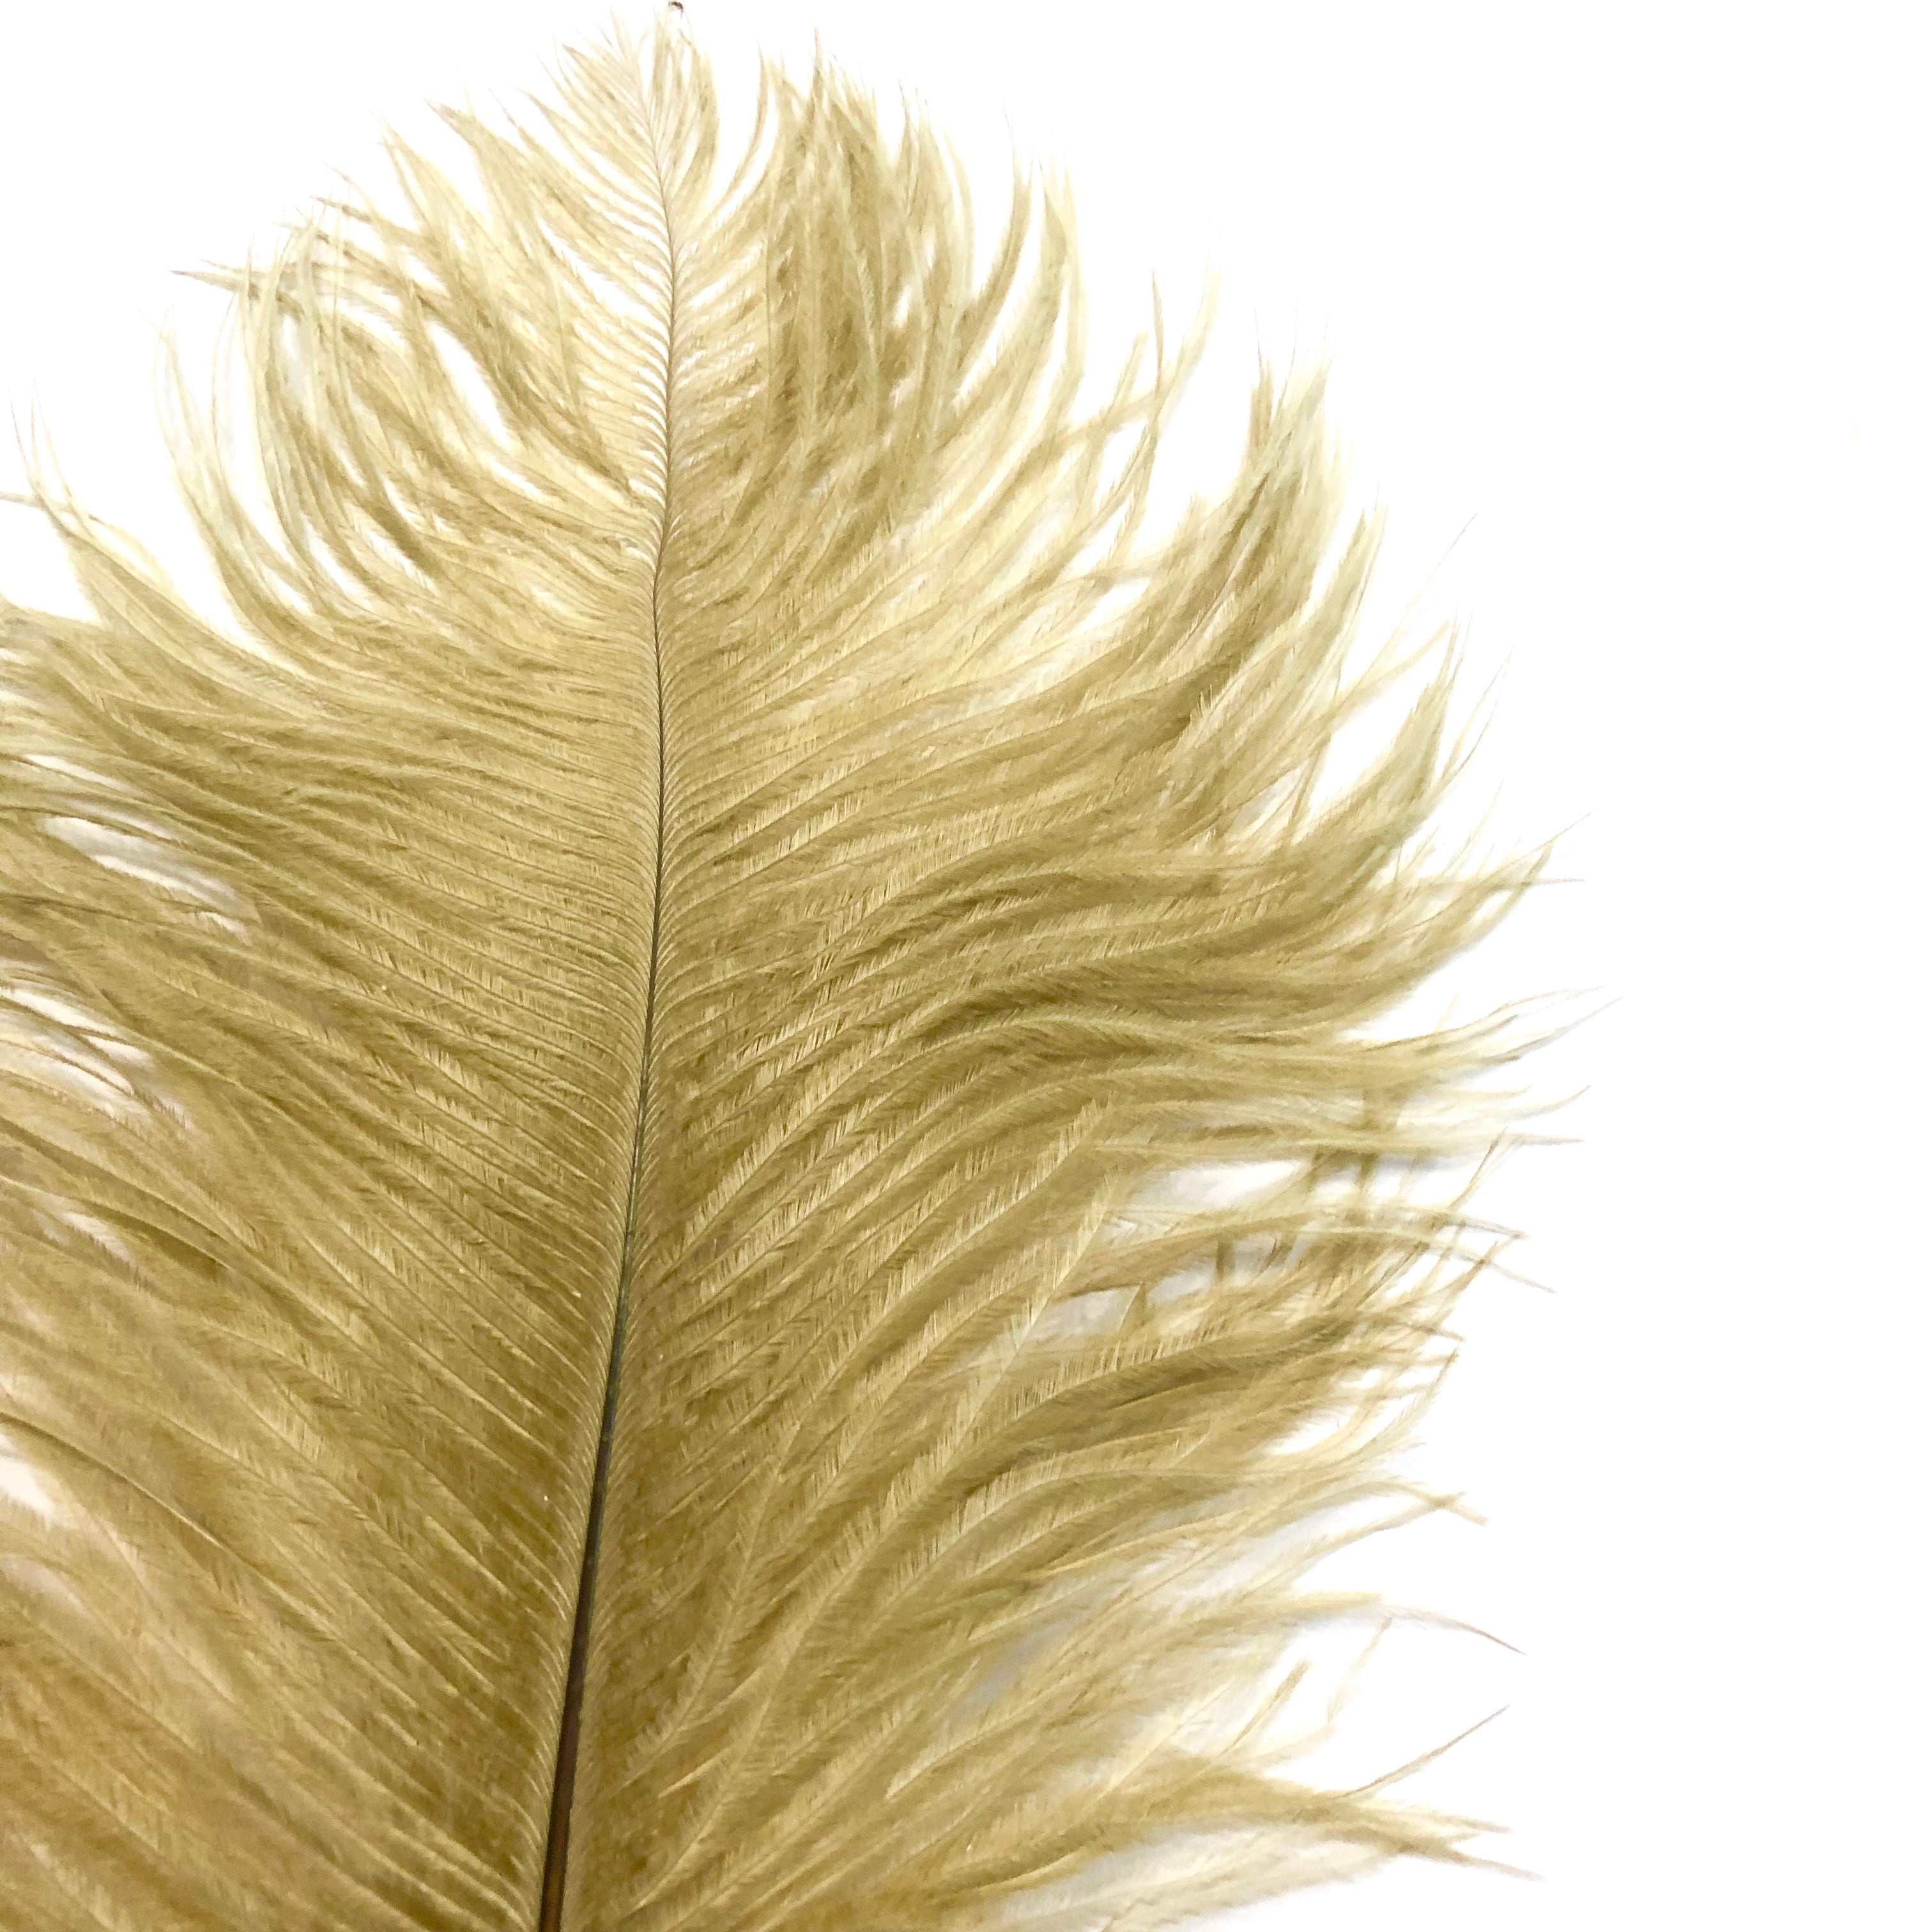 Ostrich Feather Drab 37-42cm x 5 pcs - Gold ((SECONDS))